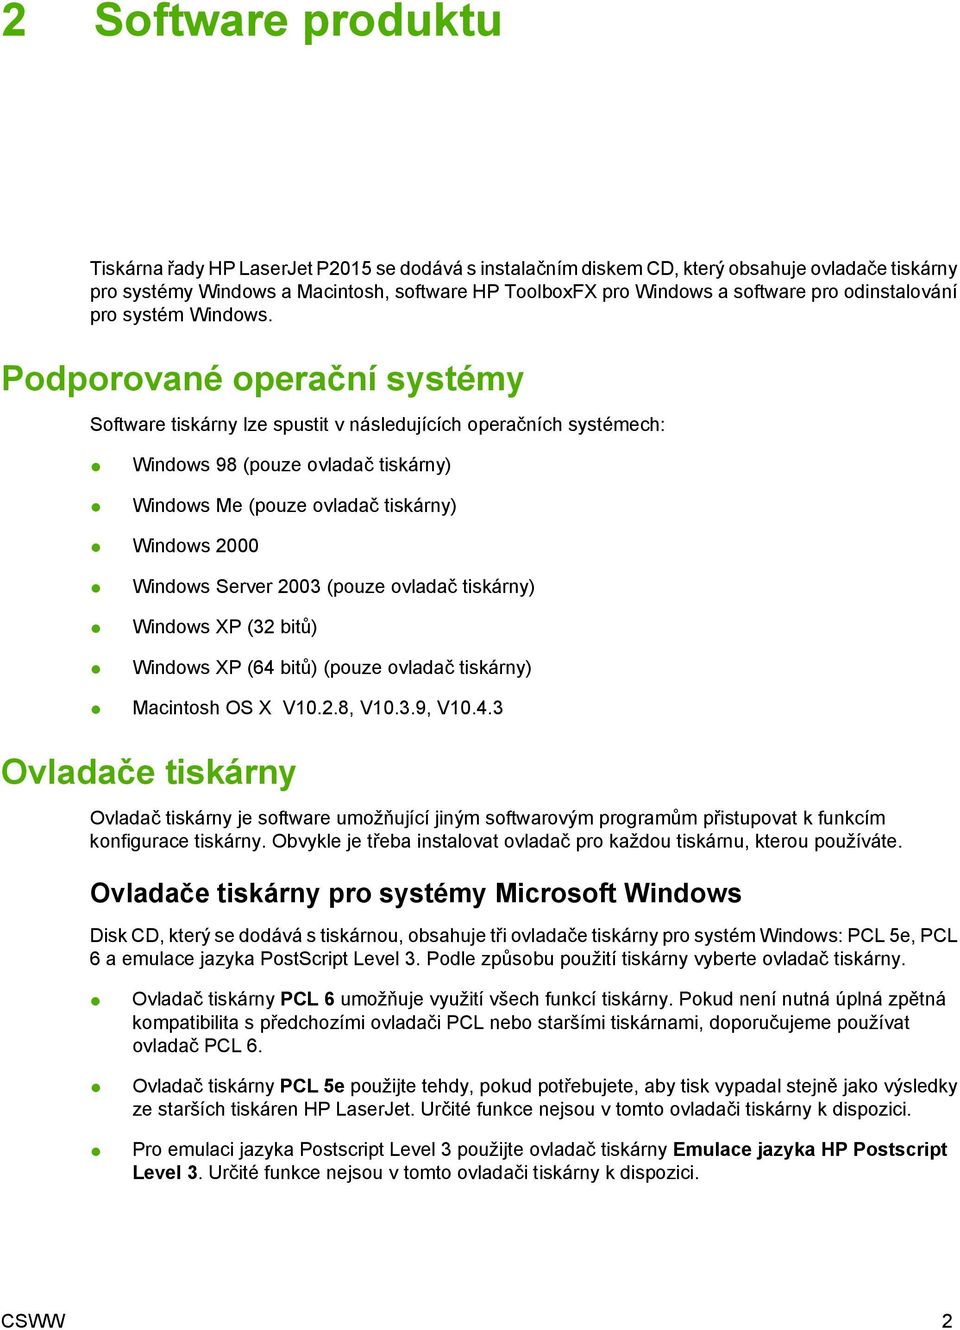 Podporované operační systémy Software tiskárny lze spustit v následujících operačních systémech: Windows 98 (pouze ovladač tiskárny) Windows Me (pouze ovladač tiskárny) Windows 2000 Windows Server